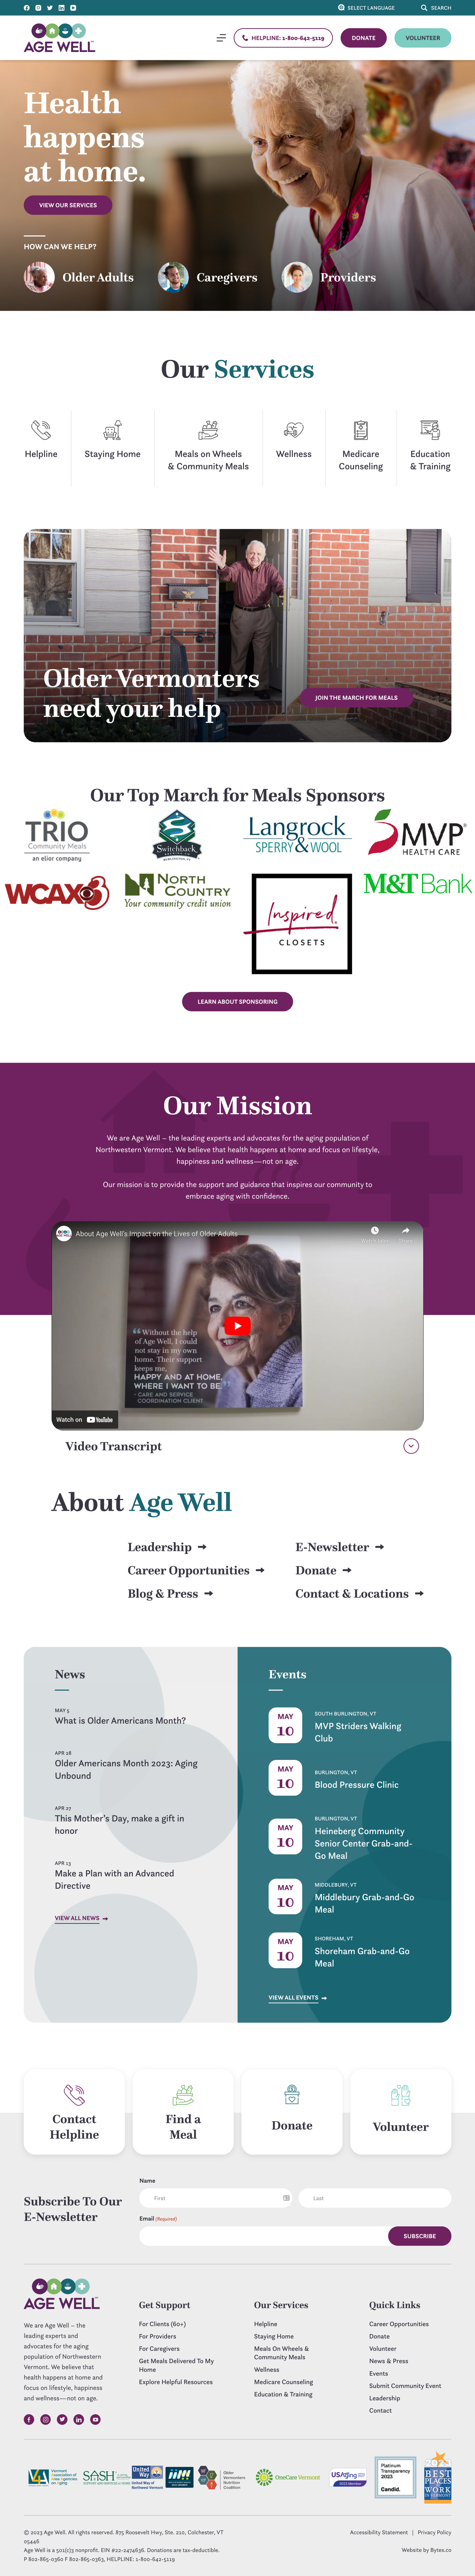 Age Well homepage screenshot